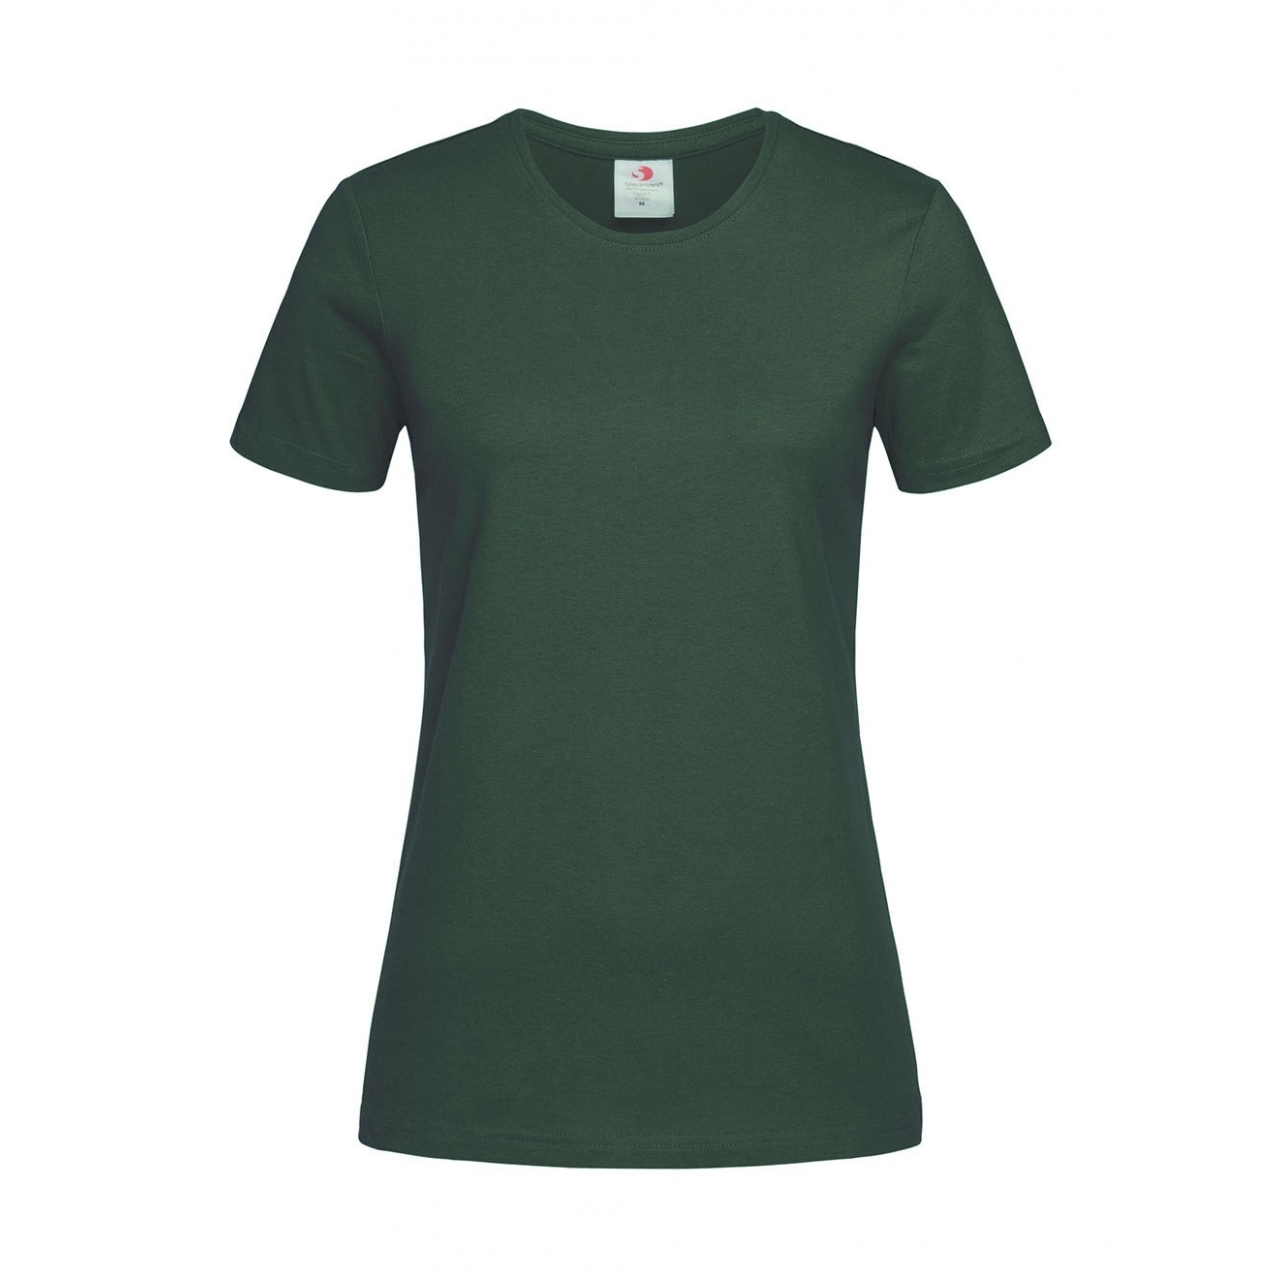 Tričko dámské Stedman Fitted s kulatým výstřihem - tmavě zelené, S